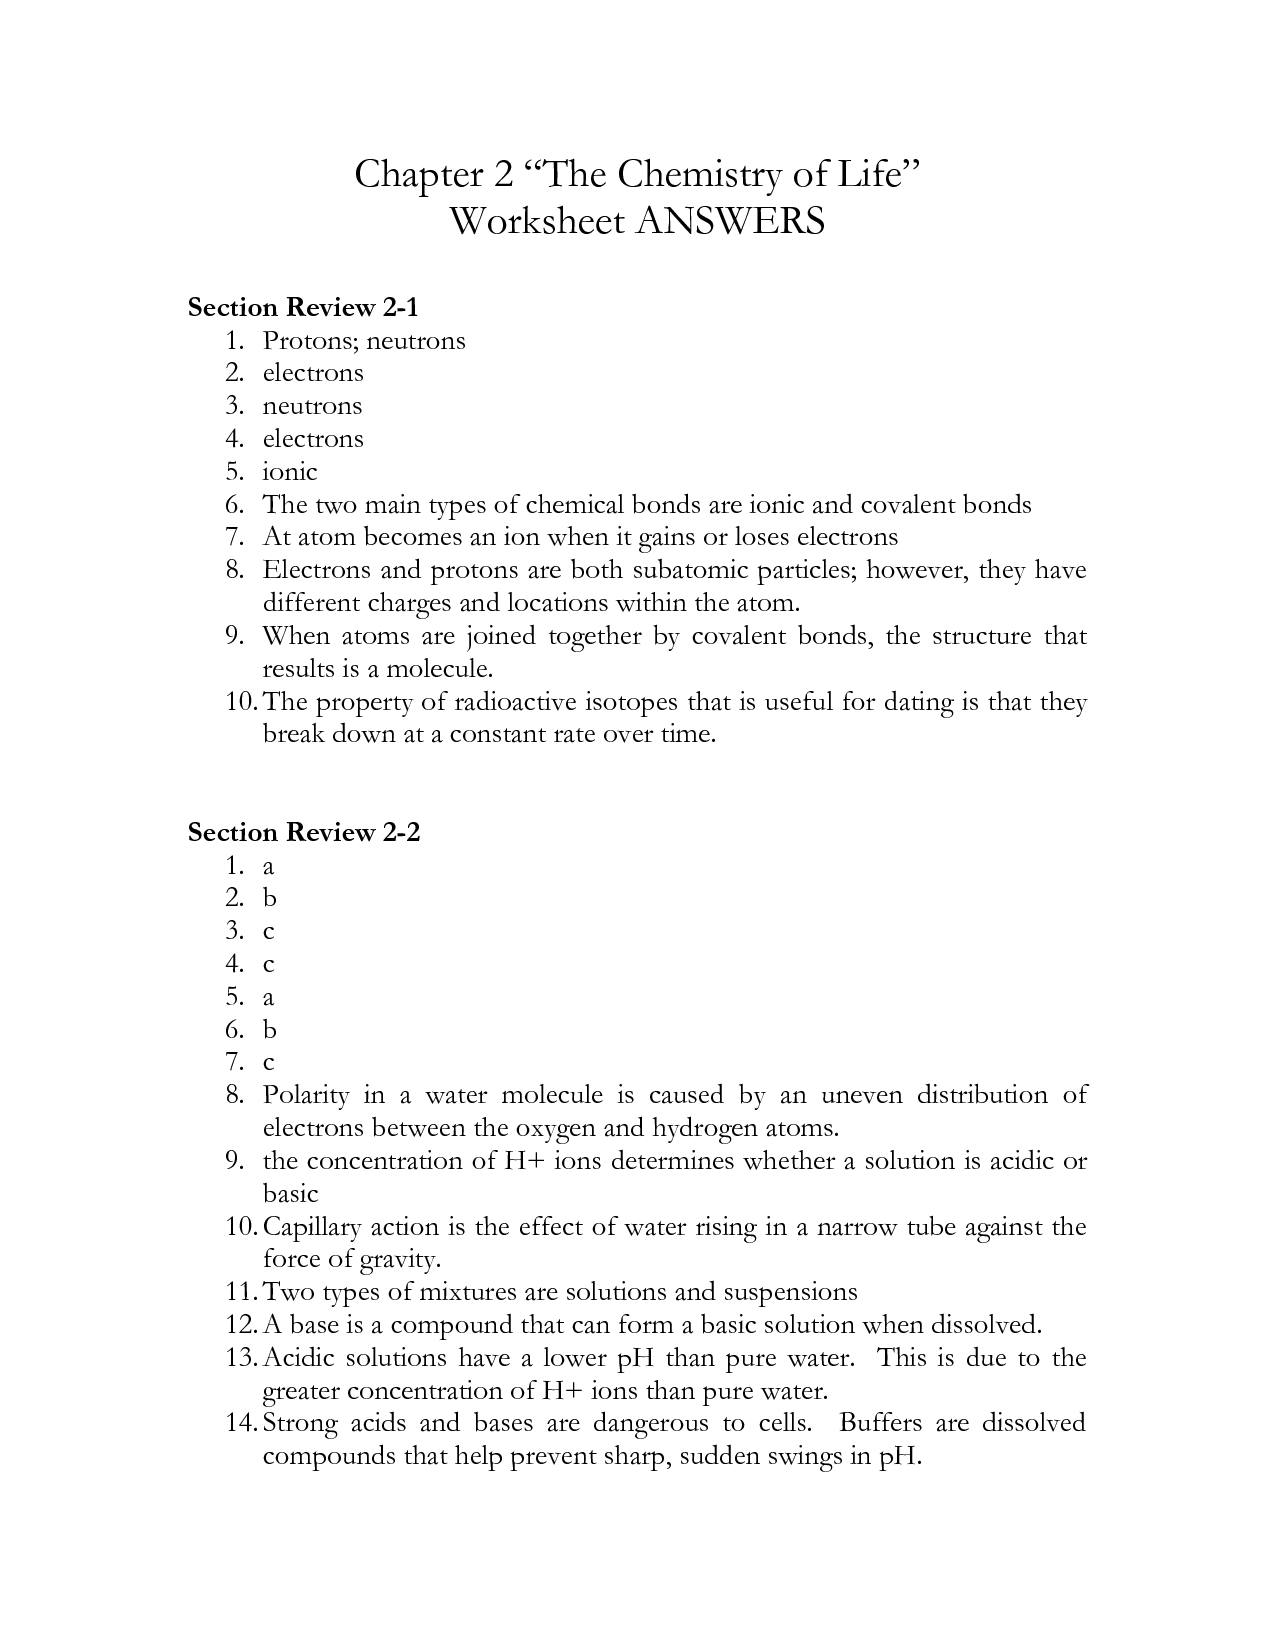 Chemistry Of Life Worksheet